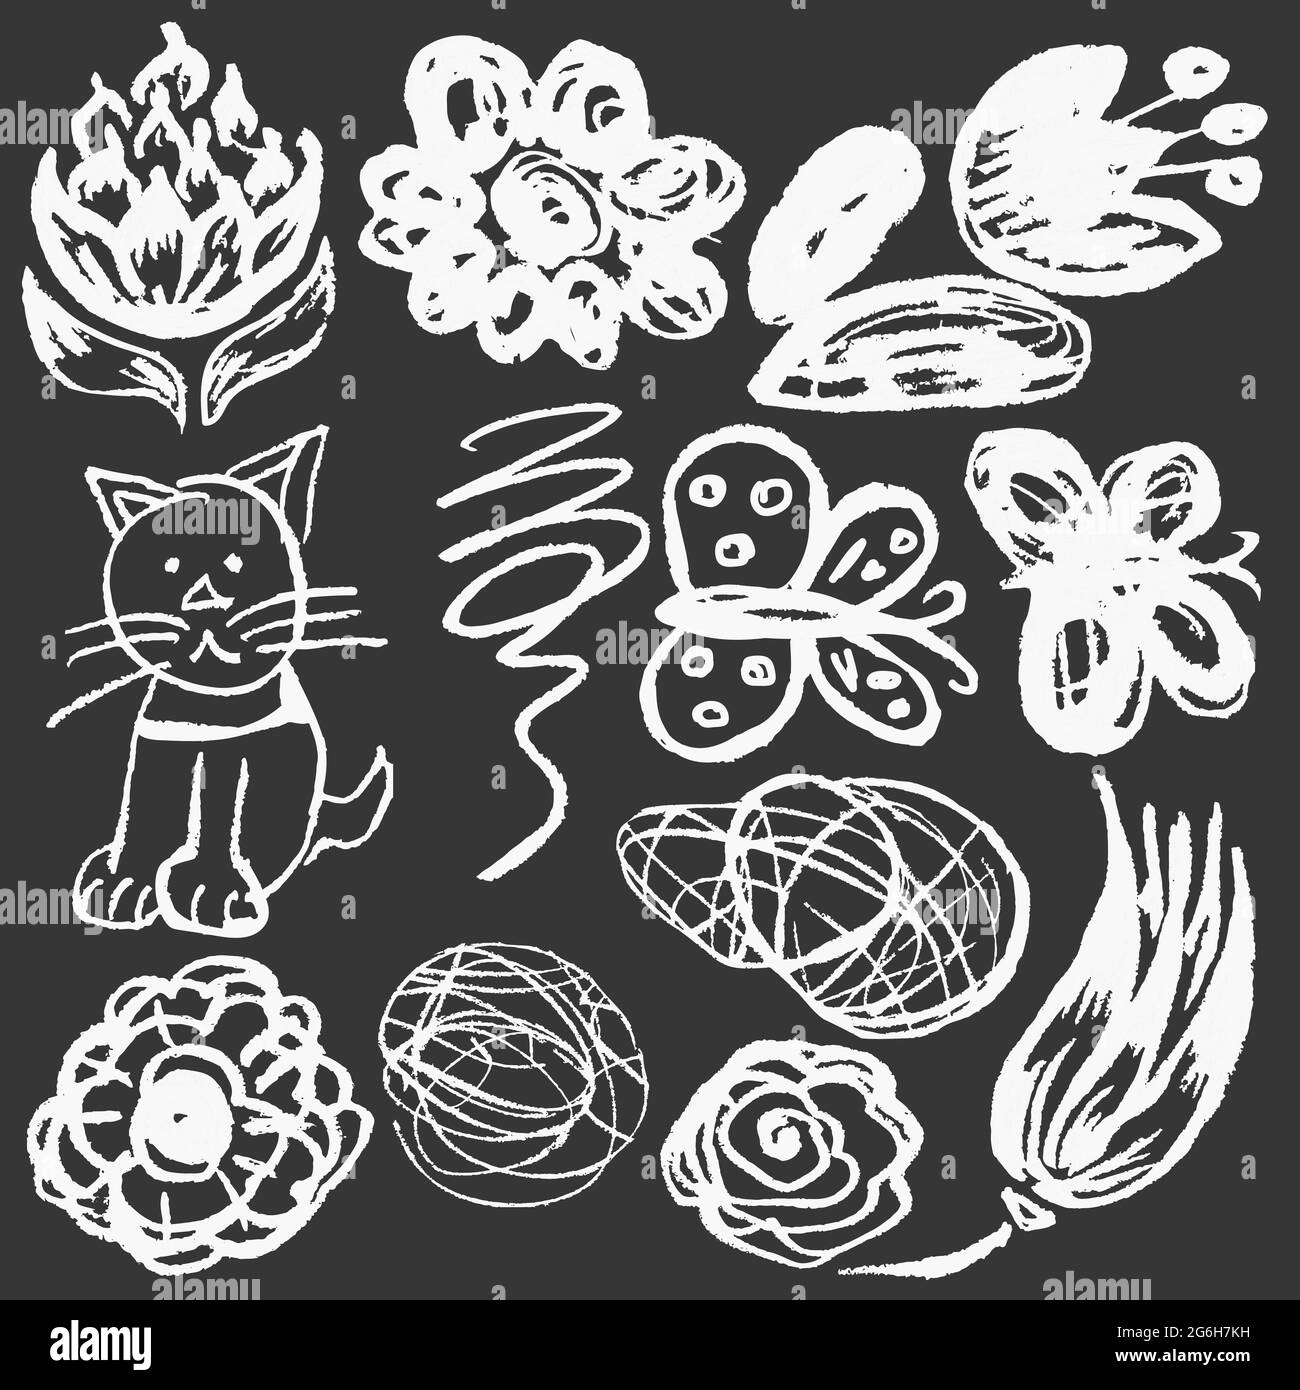 Joli dessin enfant avec craie blanche sur tableau noir. Craie pastel ou crayon drôle de style Doodle vecteur. Fleurs, gribouquets, chat, papillons Illustration de Vecteur